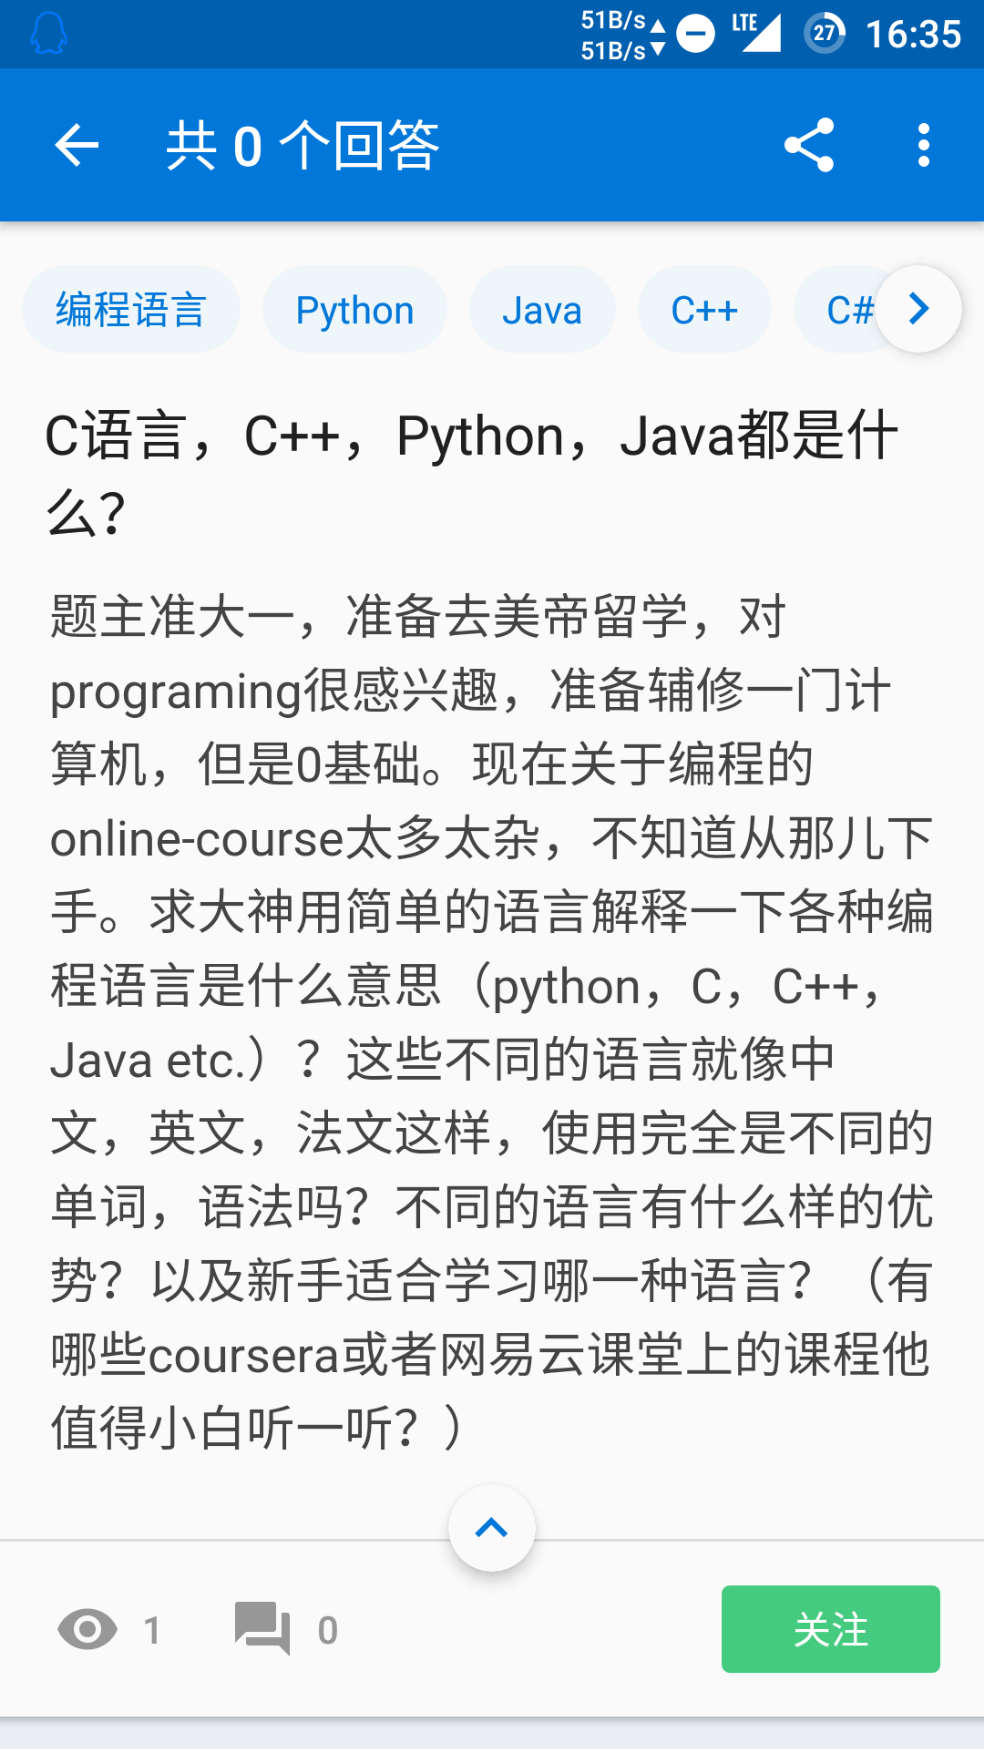 C语言,C++,Python,Java都是什么? - 知乎用户的